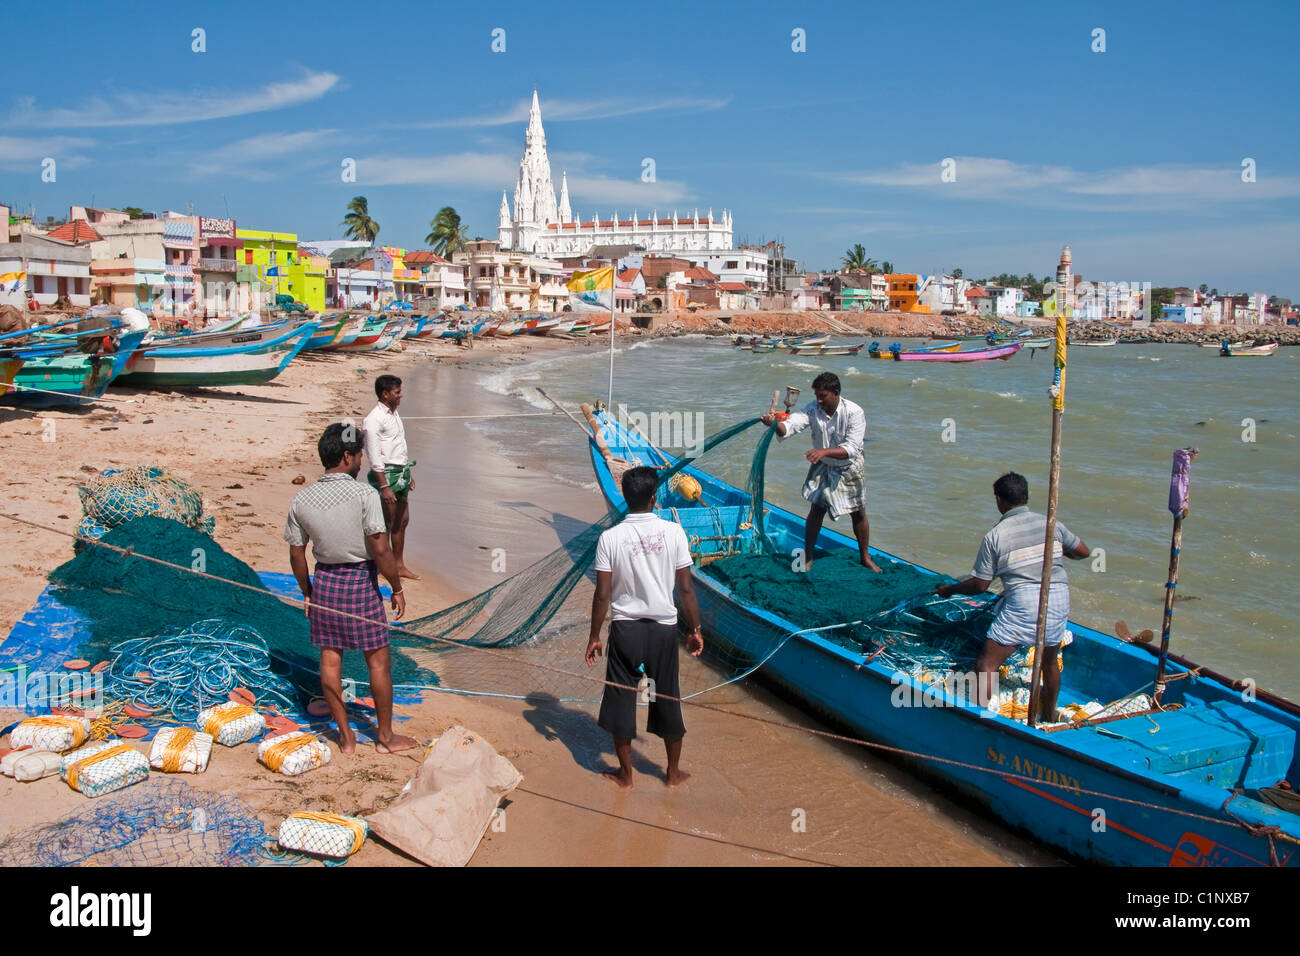 Los pescadores en la playa de Kanyakumari waterfront la preparación de redes con la Iglesia de Nuestra Señora de la Merced en segundo plano. Foto de stock